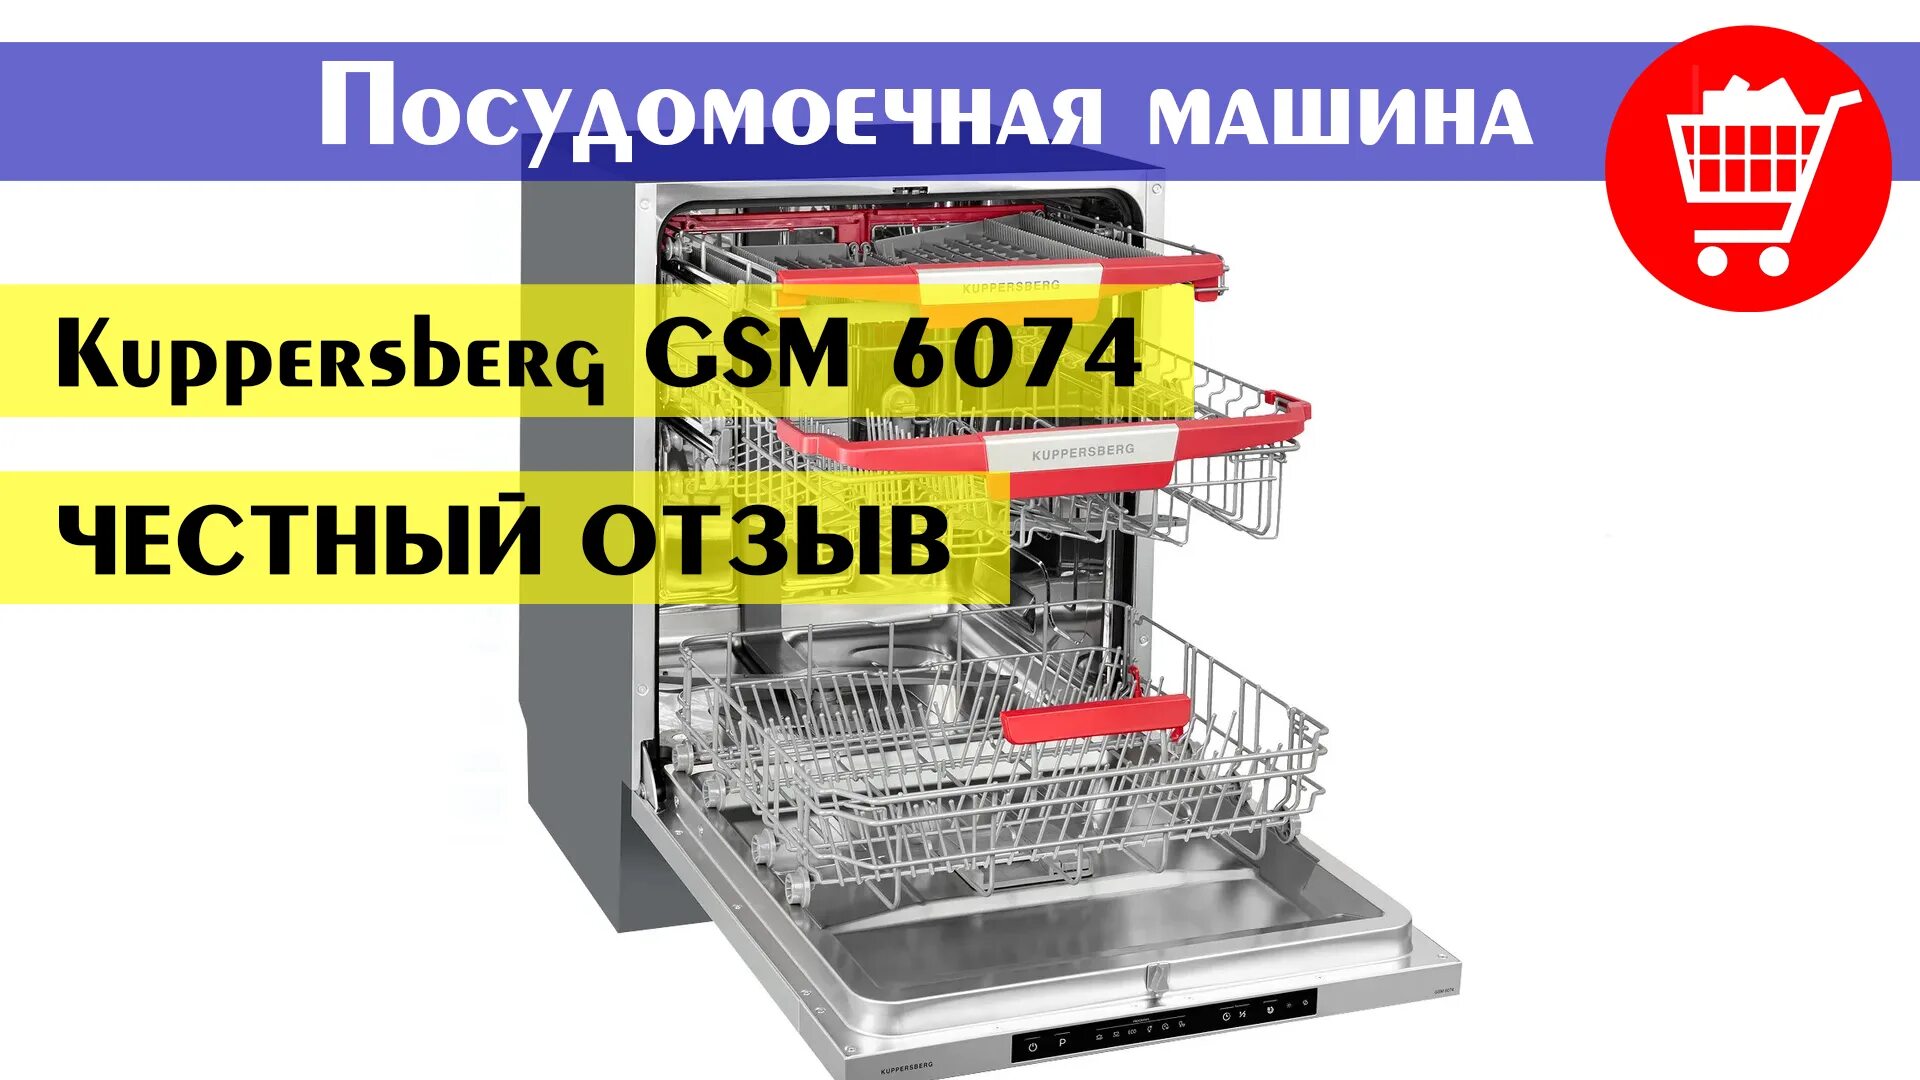 Посудомоечная машина Kuppersberg GSM 6074. Посудомоечная машина встраиваемая Kuppersberg GSM 4574. Встраиваемая посудомоечная машина 60 см Kuppersberg GSM 6074. Kuppersberg GS 6074. Посудомоечная машина gsm 6074